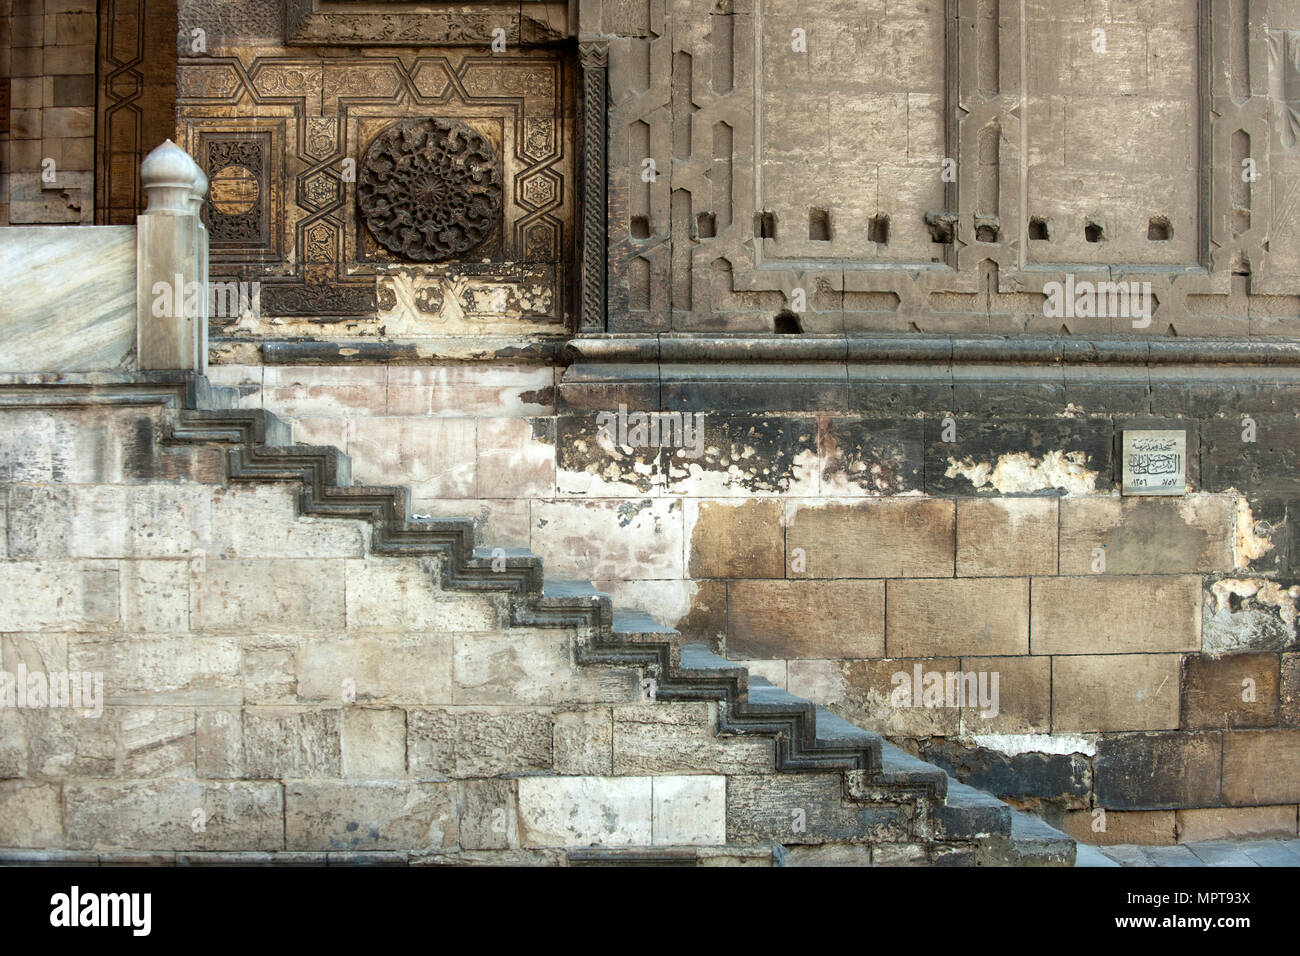 Aegypten, Kairo, Sultan Hassan Moschee Stock Photo